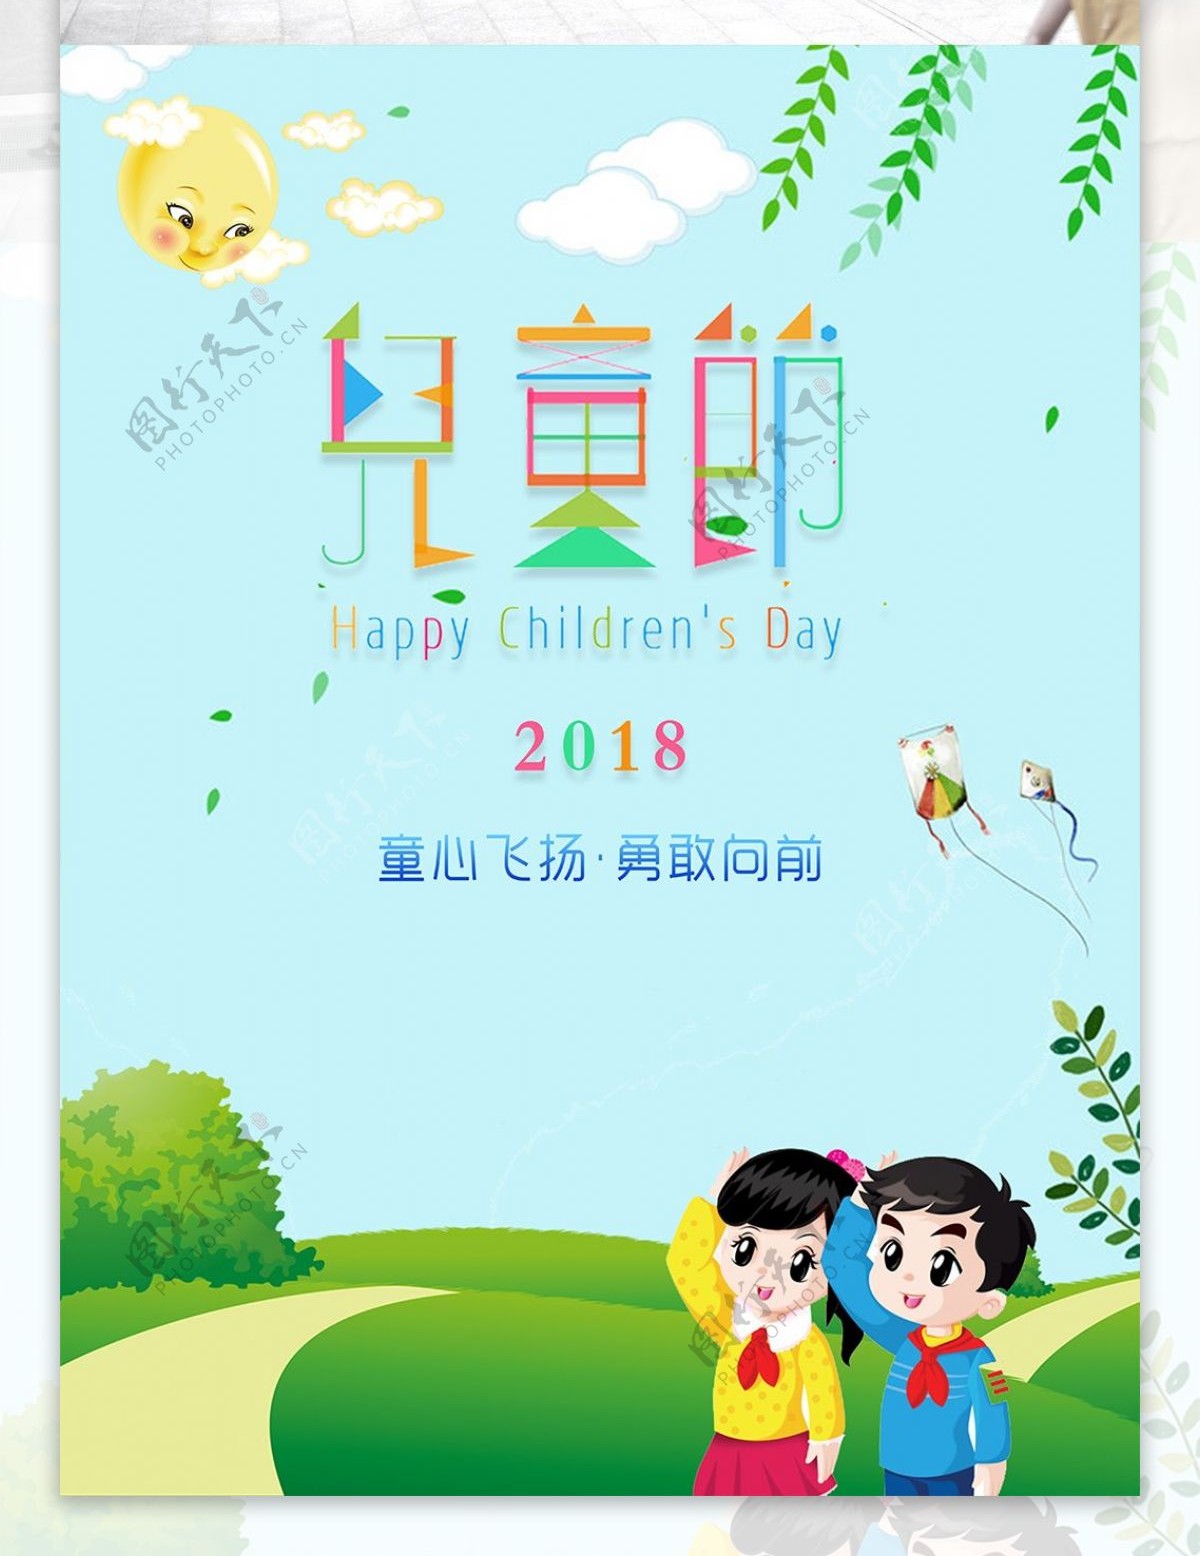 2018儿童节主题海报设计